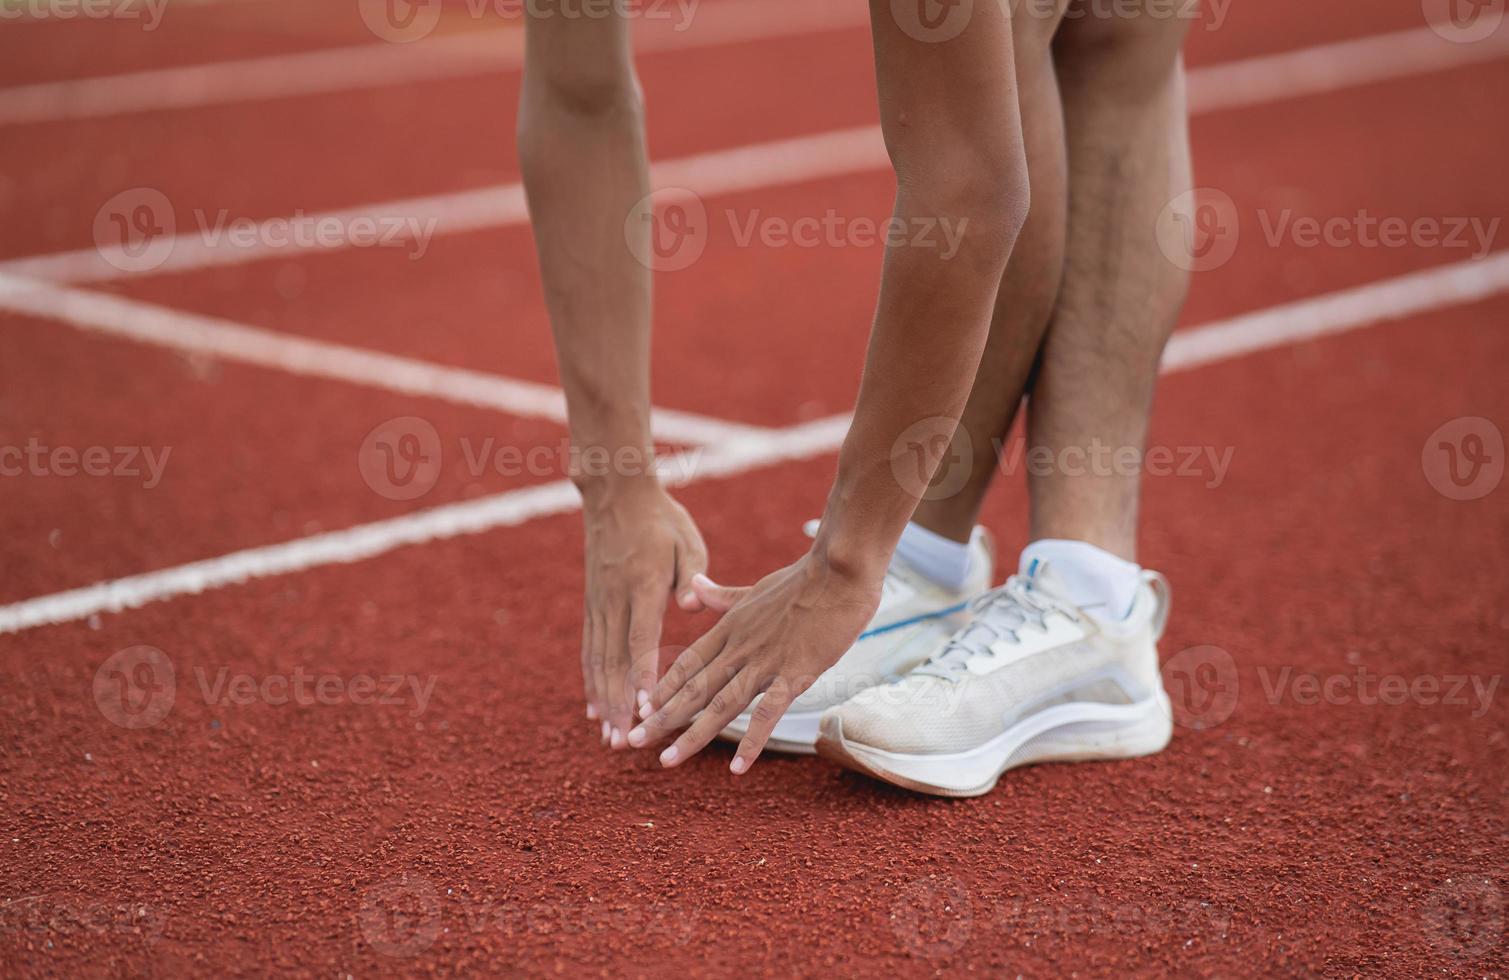 atletas deportistas corredores con ropa deportiva blanca para estirarse y calentarse antes de practicar en una pista de atletismo en un estadio. concepto de deporte de corredor. foto